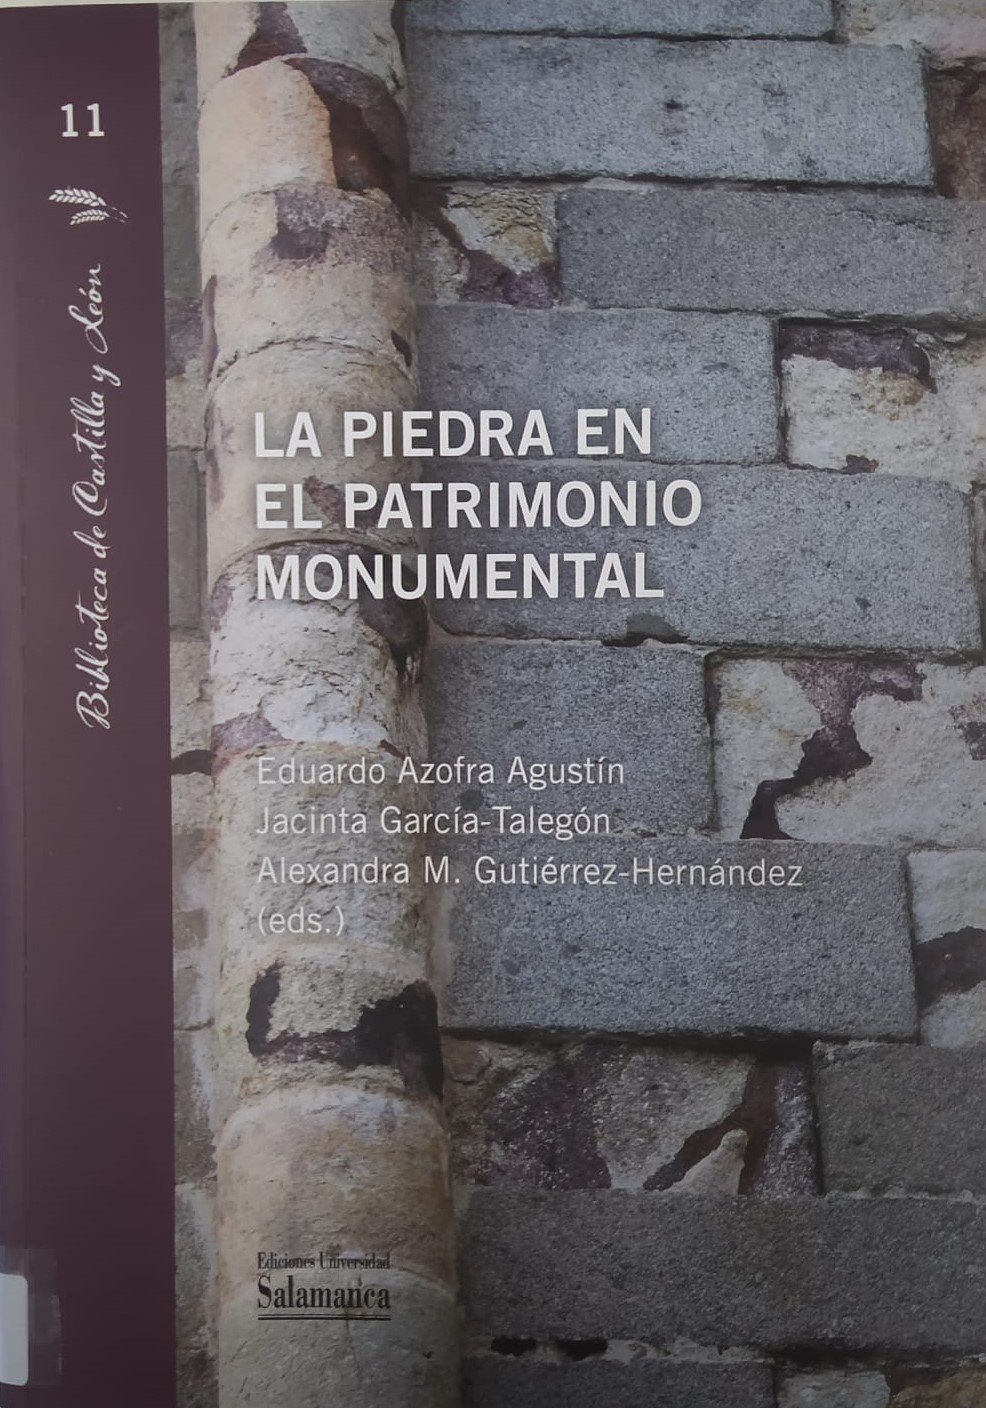 Imagen de portada del libro La piedra en el patrimonio monumental